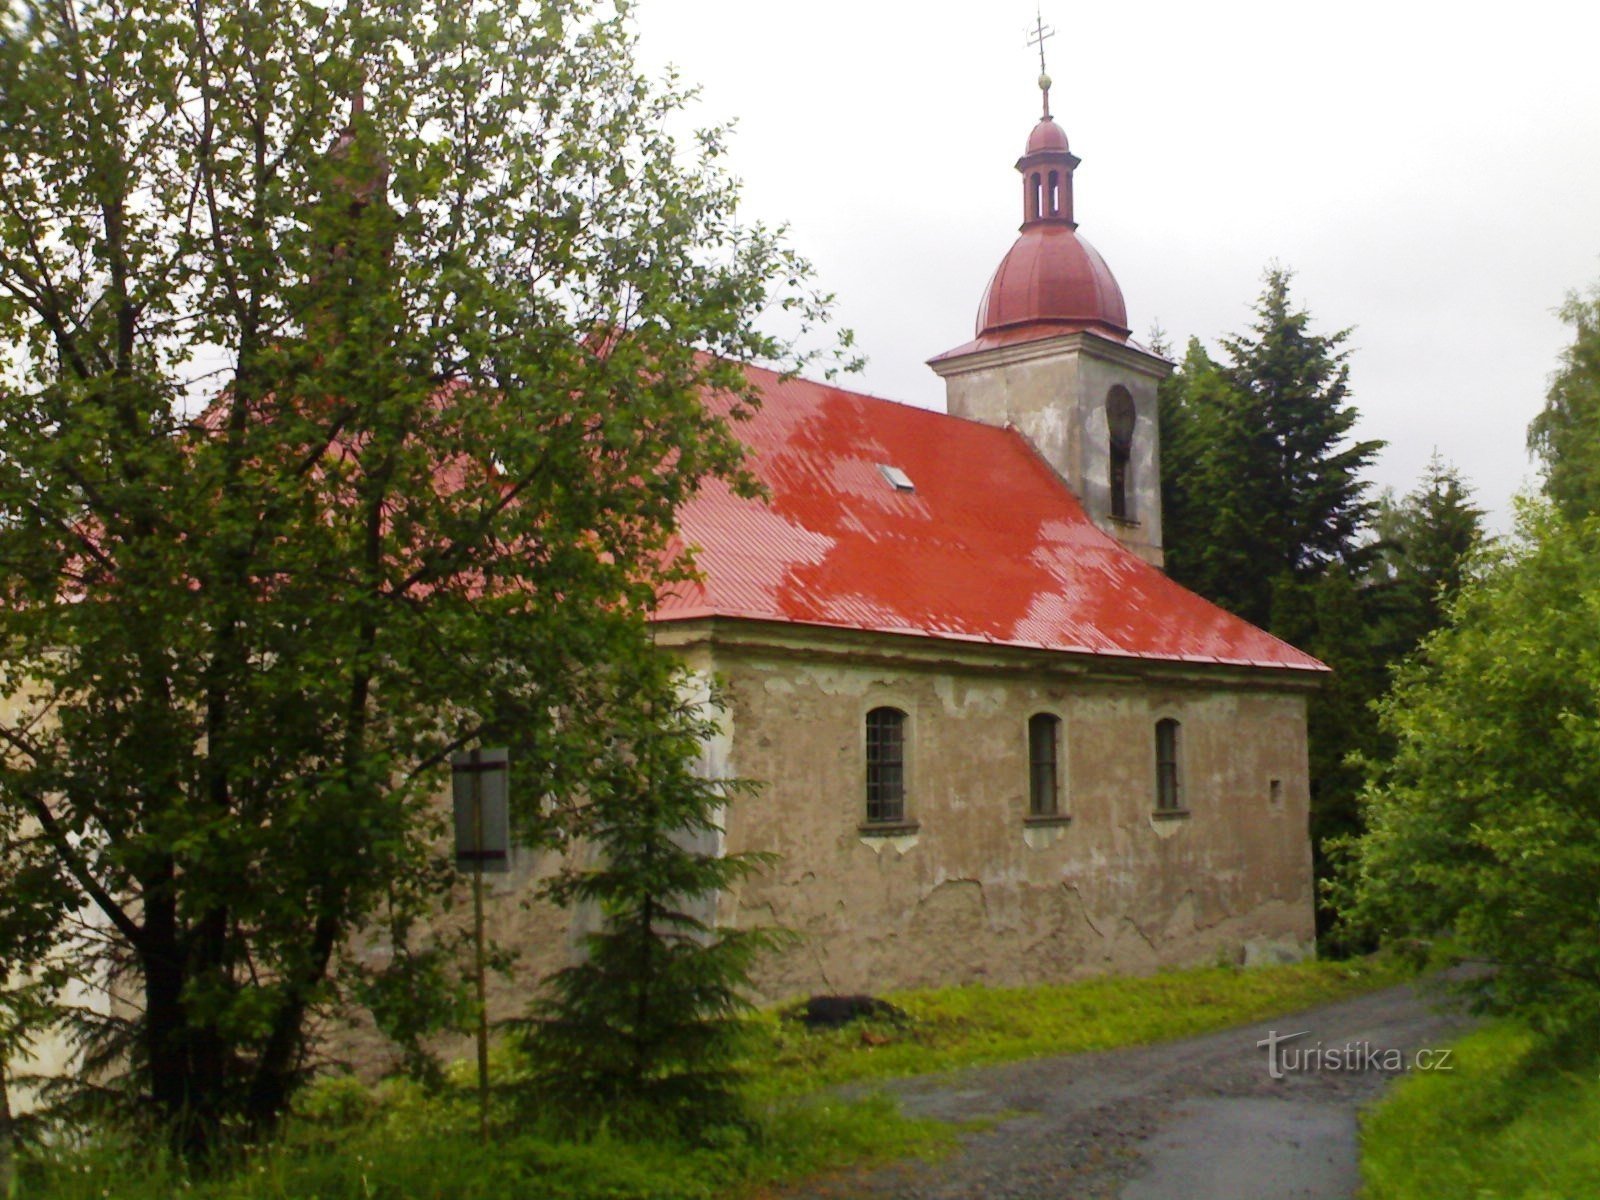 Dobnice - cerkev Dobrega pastirja